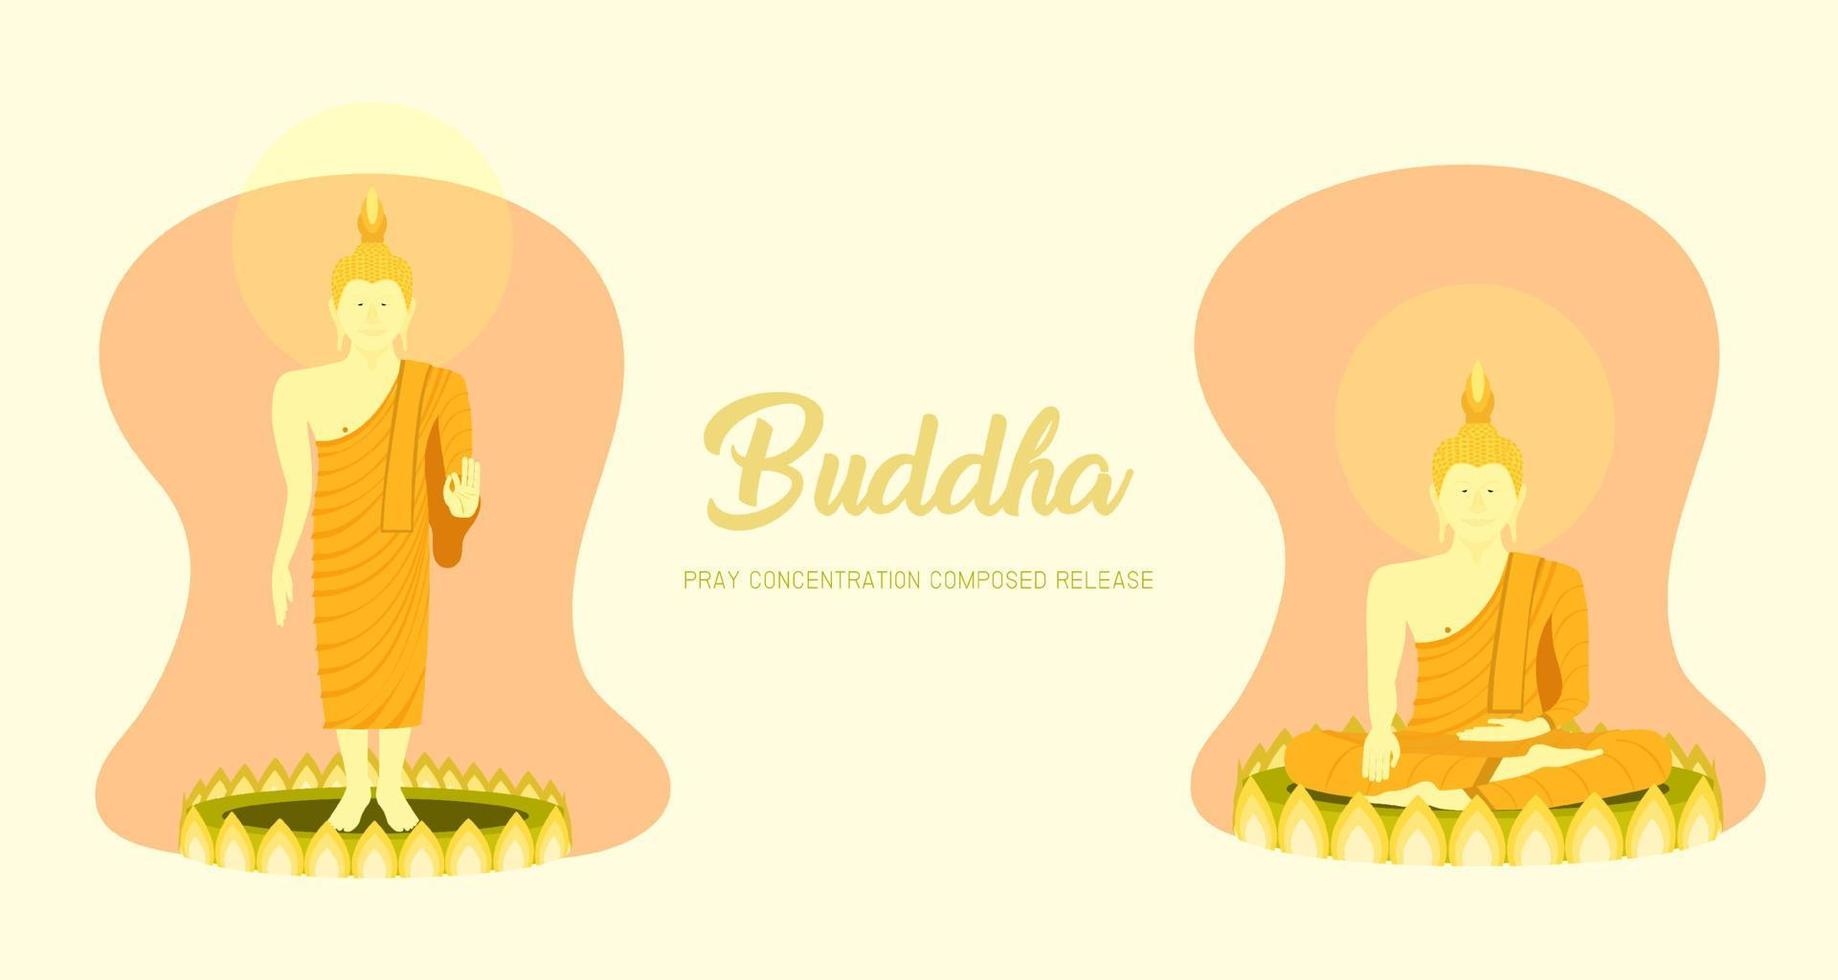 die Mönche sitzen und stehen auf Lotusbasis, um zu beten, dass die Konzentration komponiert ist, um loszulassen. Pastellfarbener Hintergrund. Vektorillustration eps10 vektor